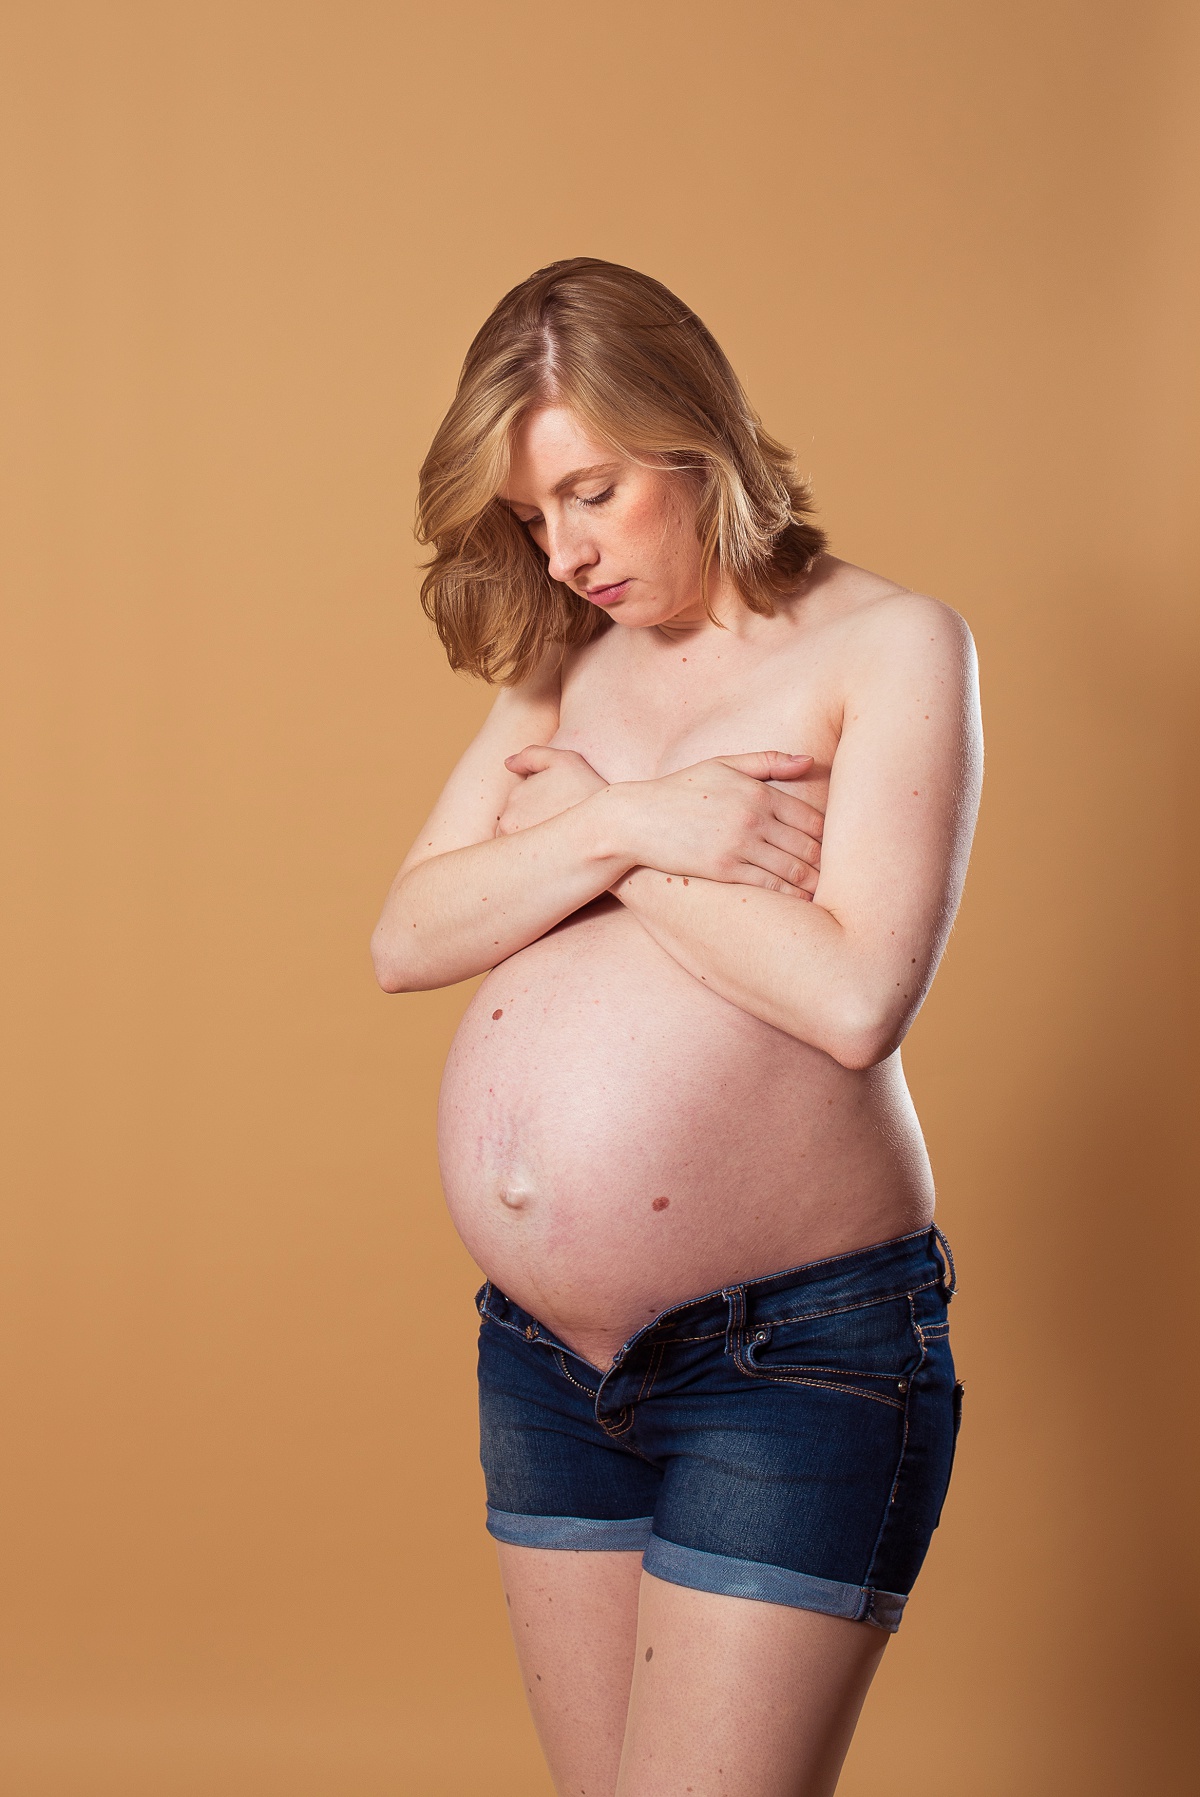 Photographe femme enceinte Lille de belles photos de grossesse en studio dans le nord pas de calais lens béthune dunkerque marcq en baroeul bondues wasquehal